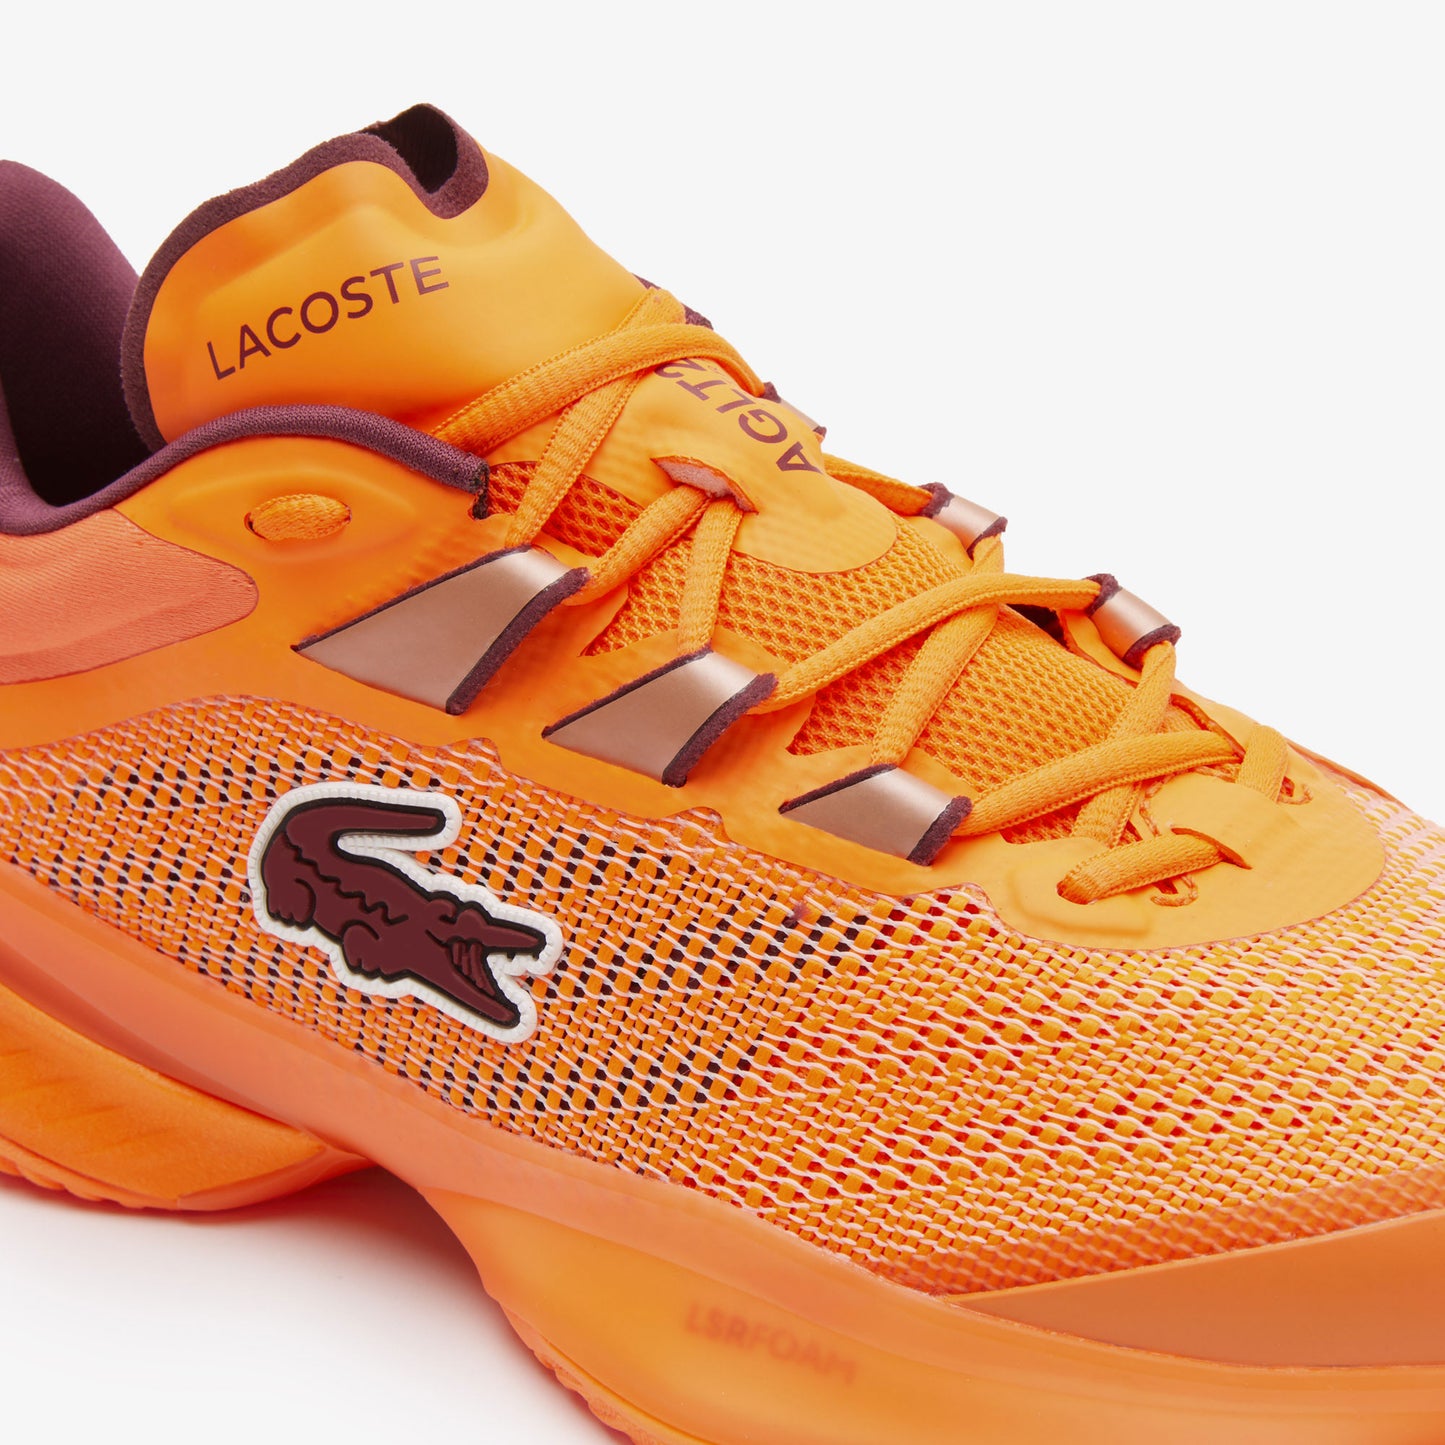 Lacoste AG-LT23 Ultra Men's Tennis Shoes Orange (6)